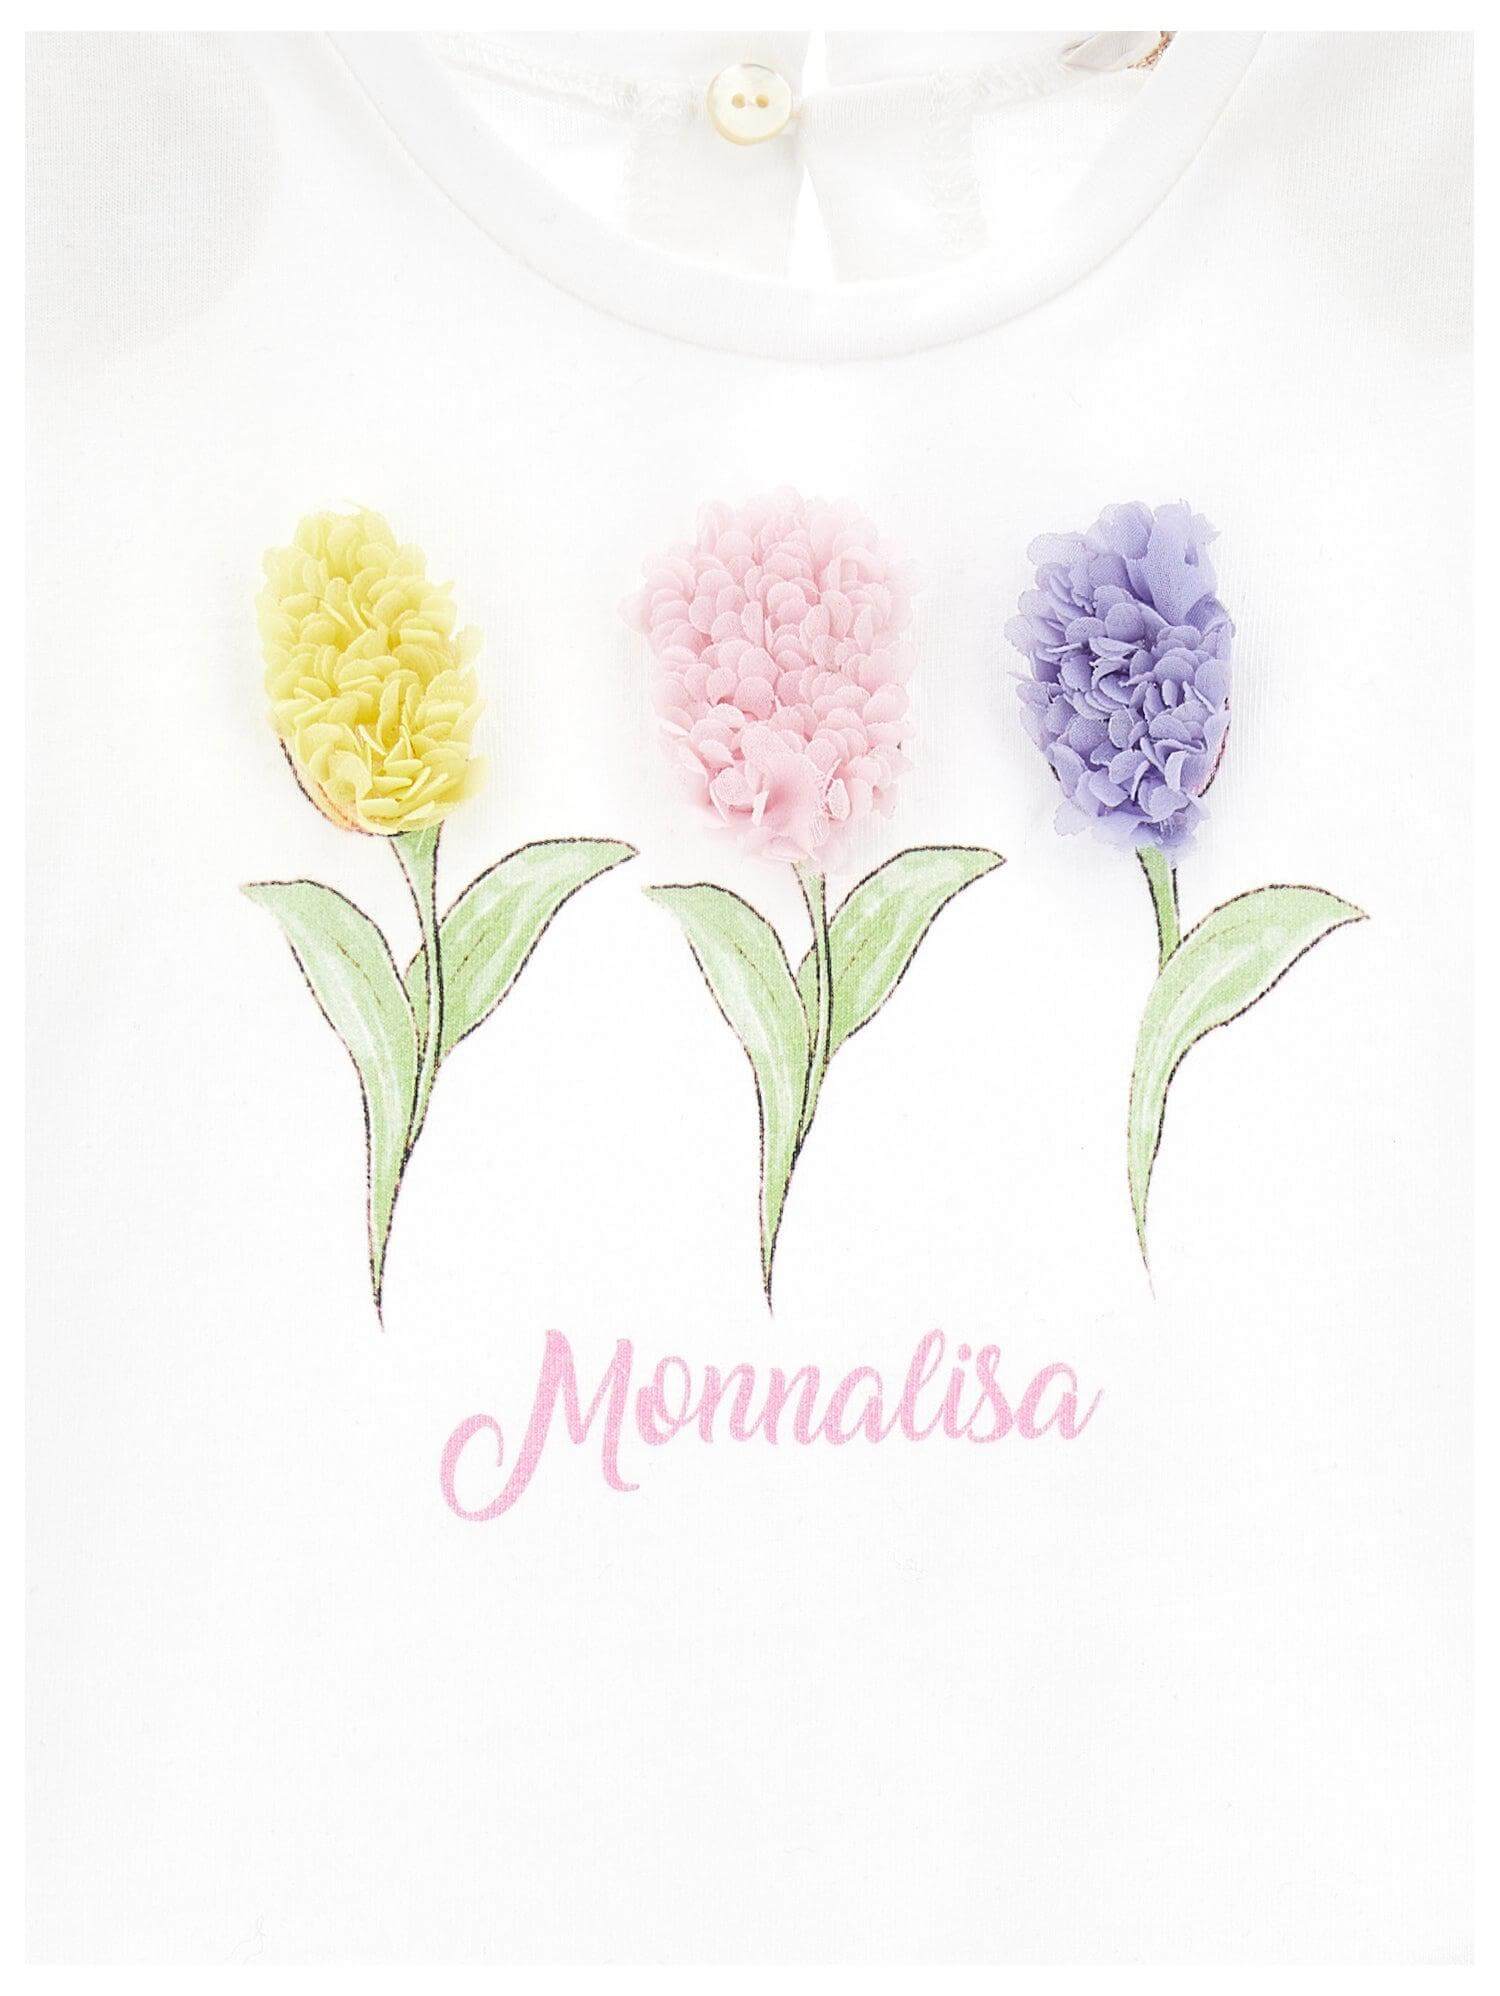 Monnalisa Girls White Flowers T-shirt